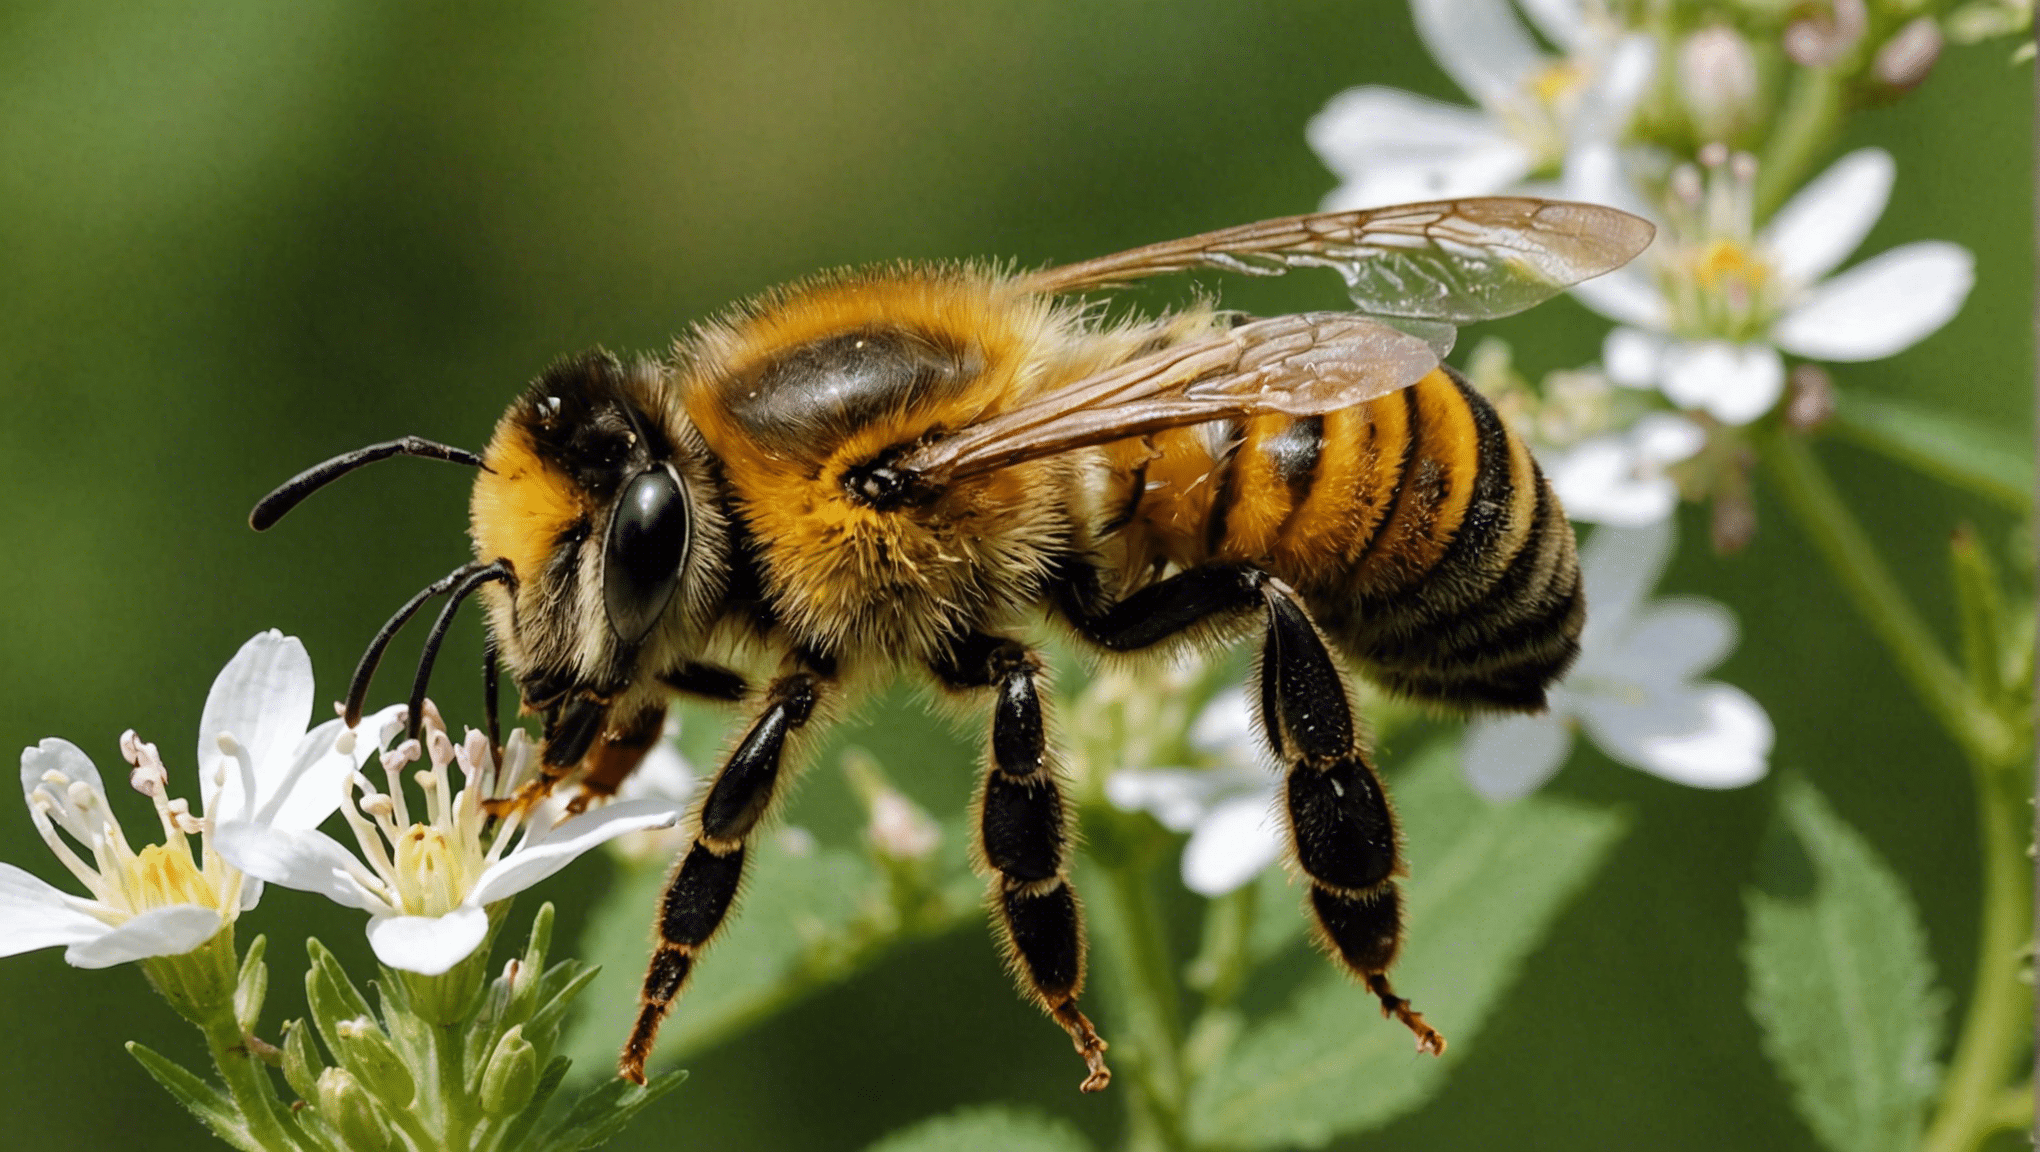 なぜミツバチが生物多様性の守護者として重要な役割を果たしているのか、そしてミツバチが私たちの生態系の保護にどのように貢献しているのかを学びましょう。